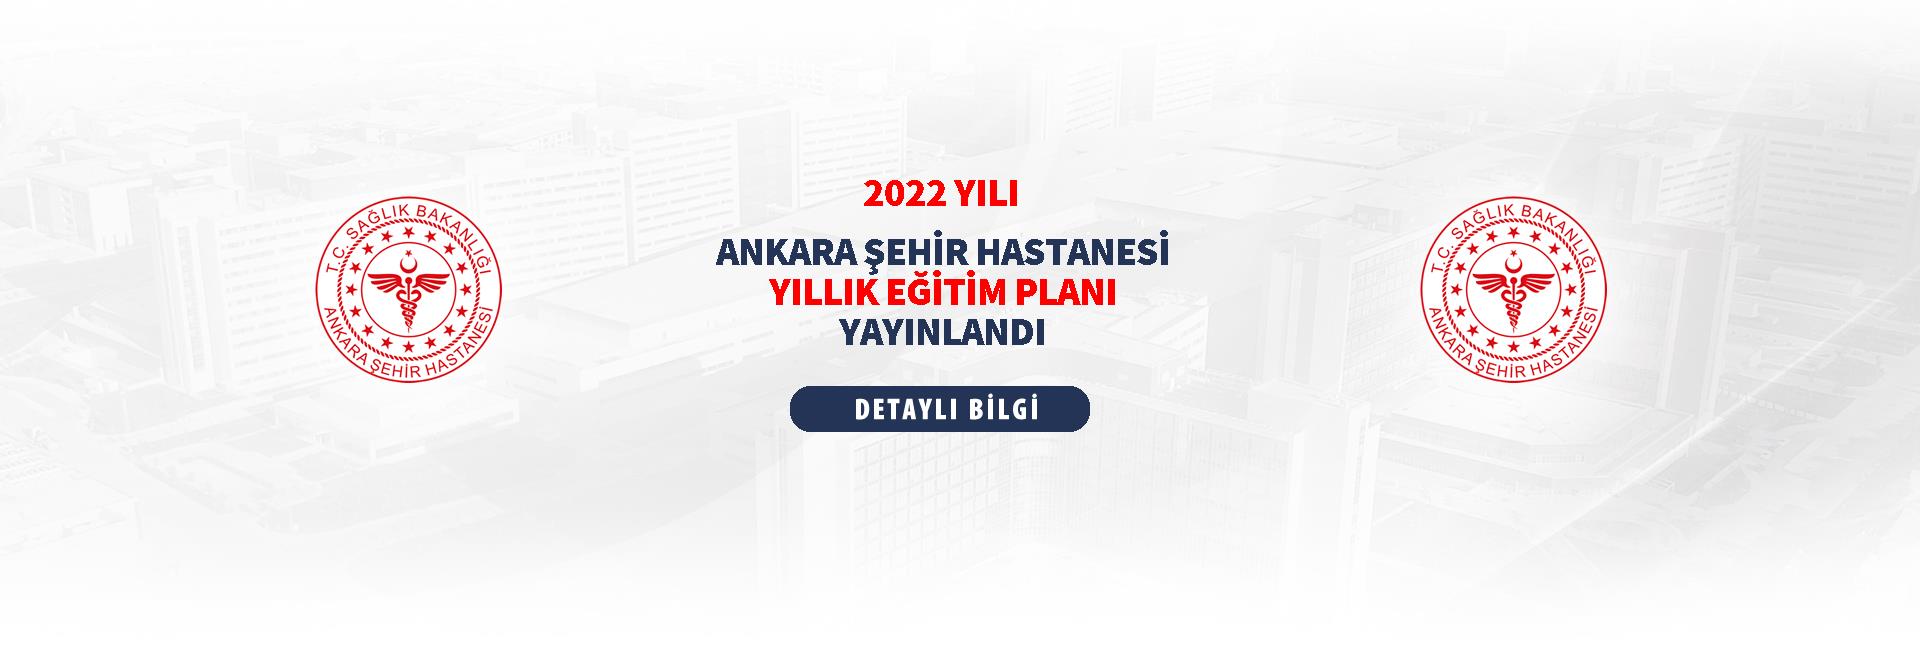 2022 Yılı Ankara Şehir Hastanesi Yıllık Eğitim Planı Yayınlandı